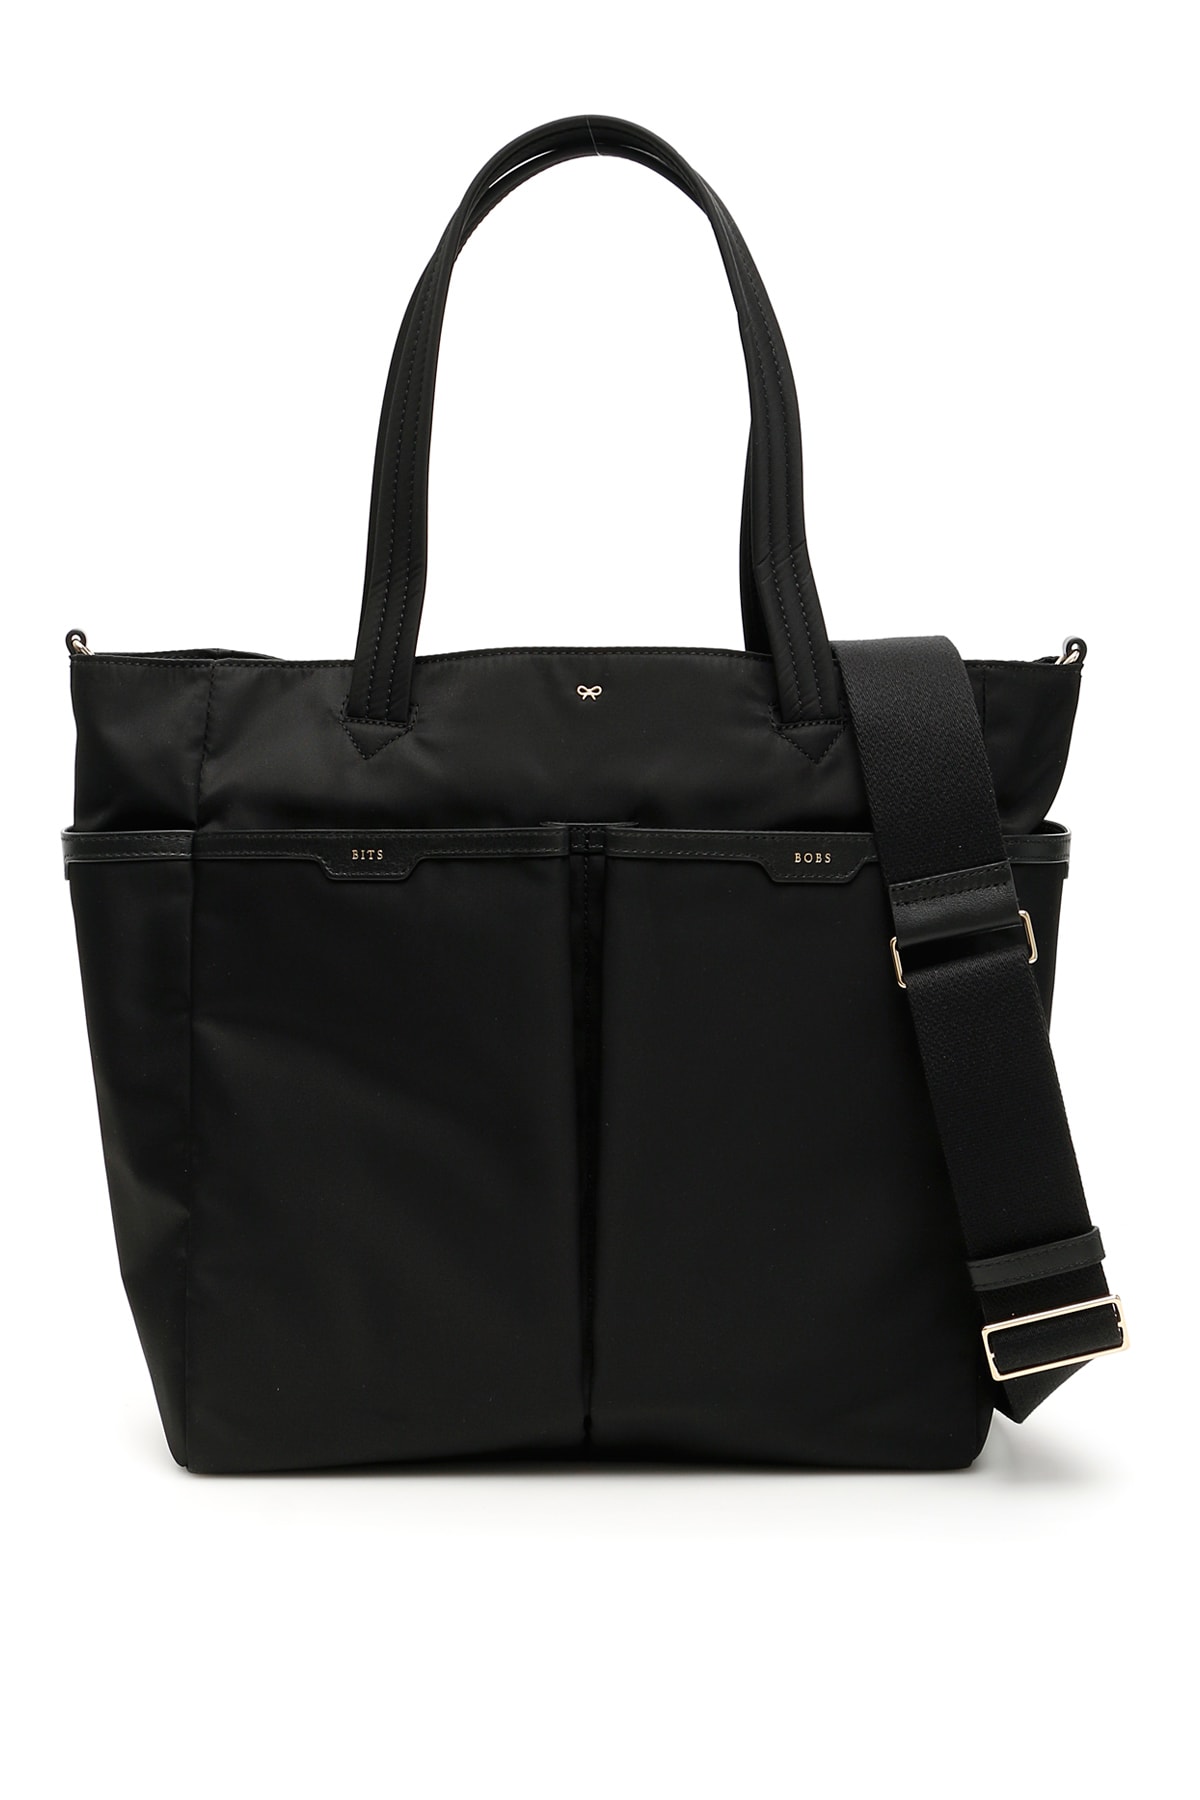 Anya Hindmarch Baby Bag In Black (black)